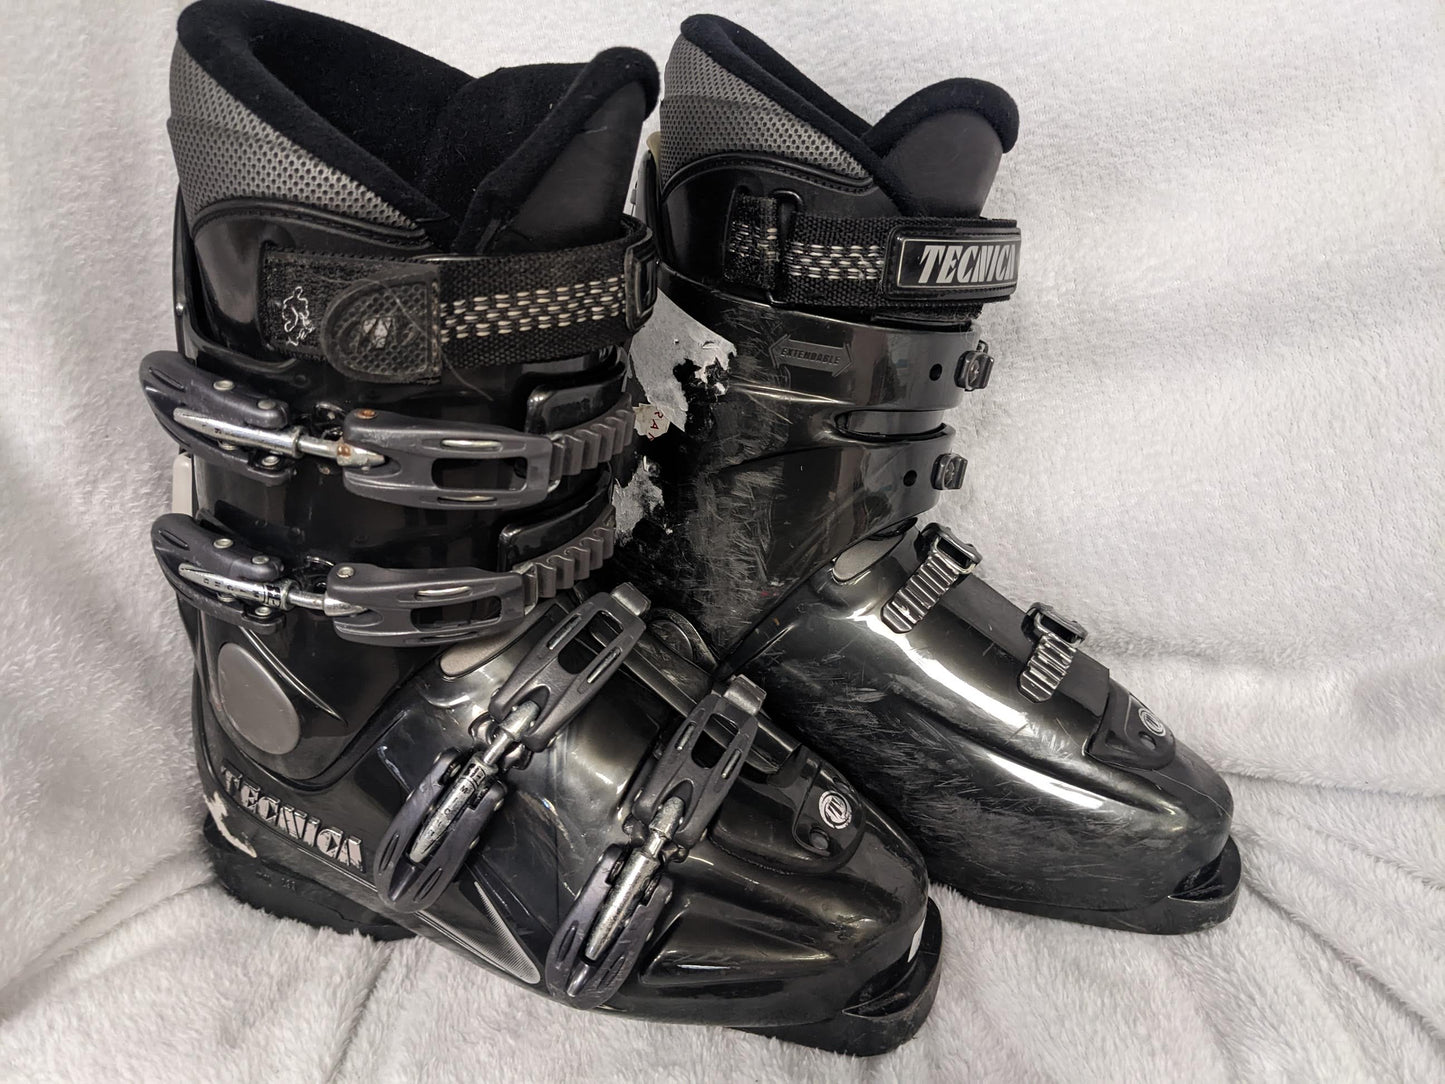 Tecnica Innotec TI-S Ski Boots Size 25 Color Black Condition Used